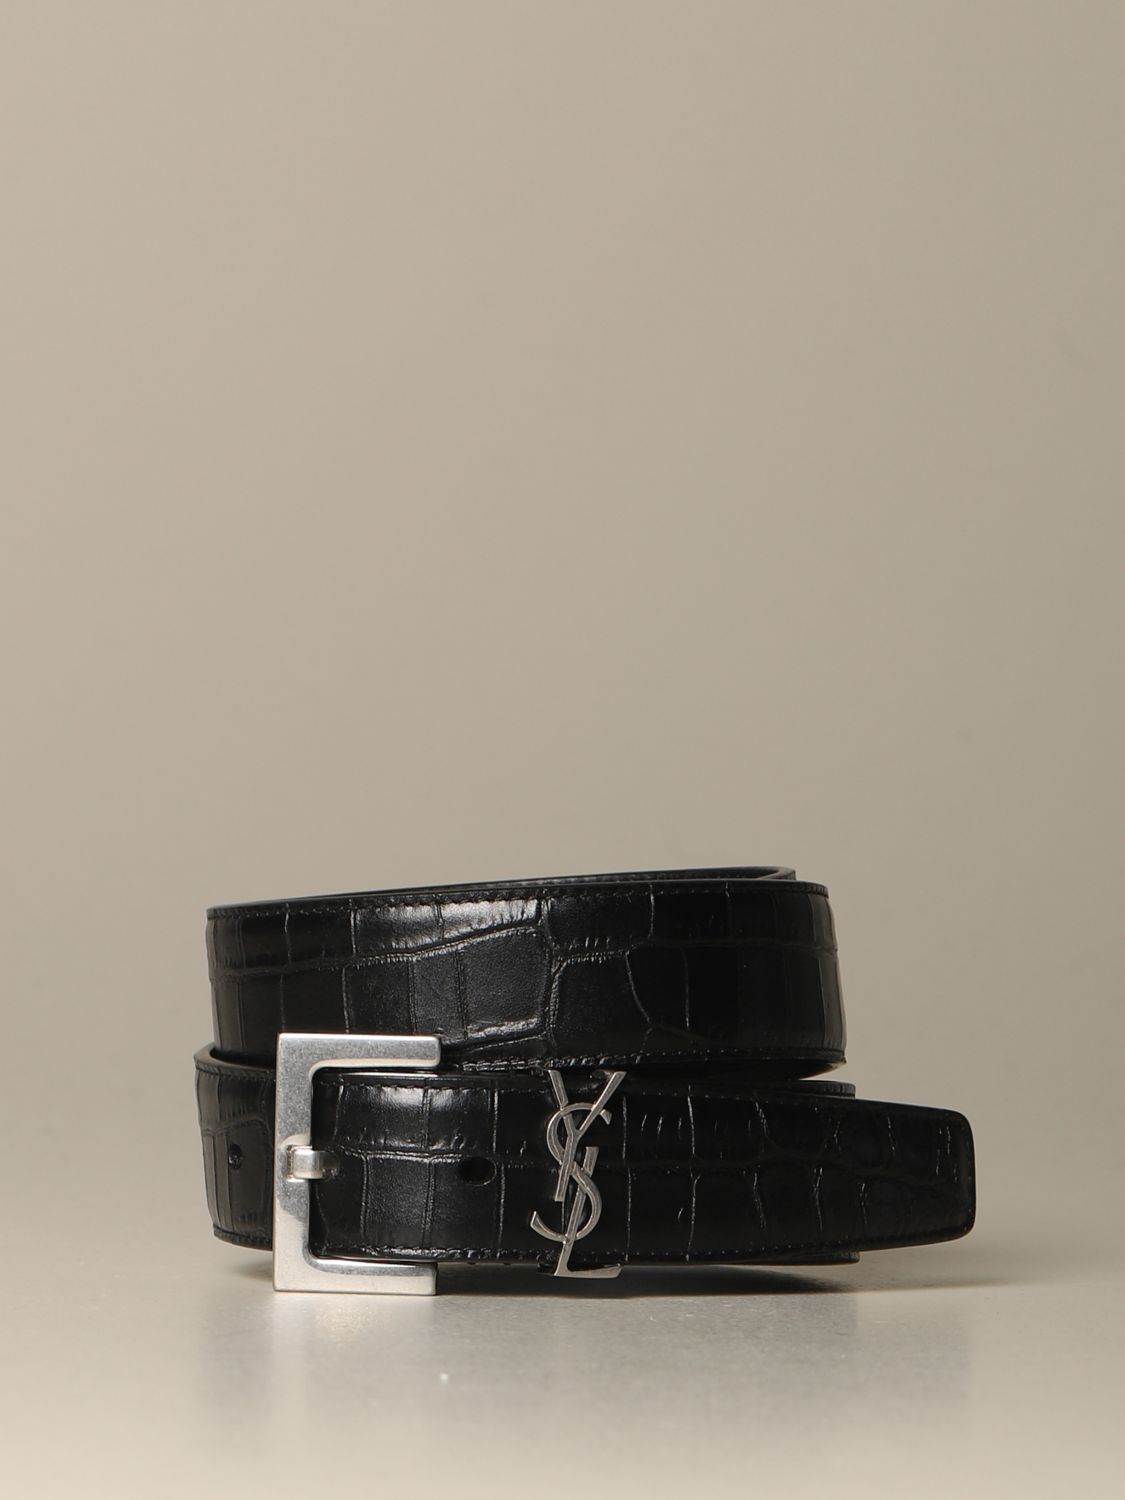 Saint Laurent Men's Logo-Embellished Croc-Effect Leather Belt